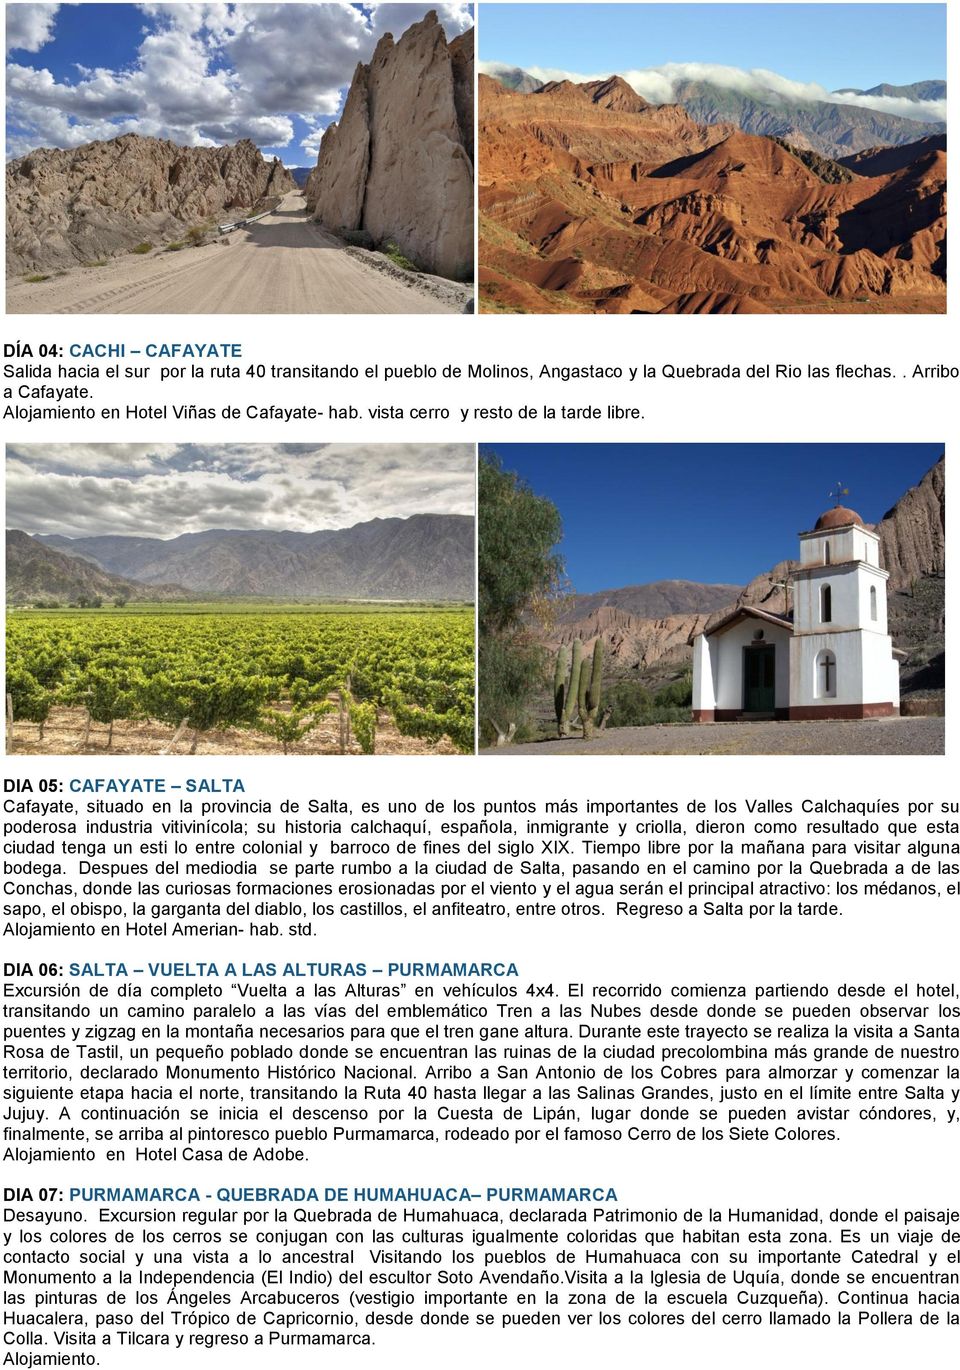 DIA 05: CAFAYATE SALTA Cafayate, situado en la provincia de Salta, es uno de los puntos más importantes de los Valles Calchaquíes por su poderosa industria vitivinícola; su historia calchaquí,